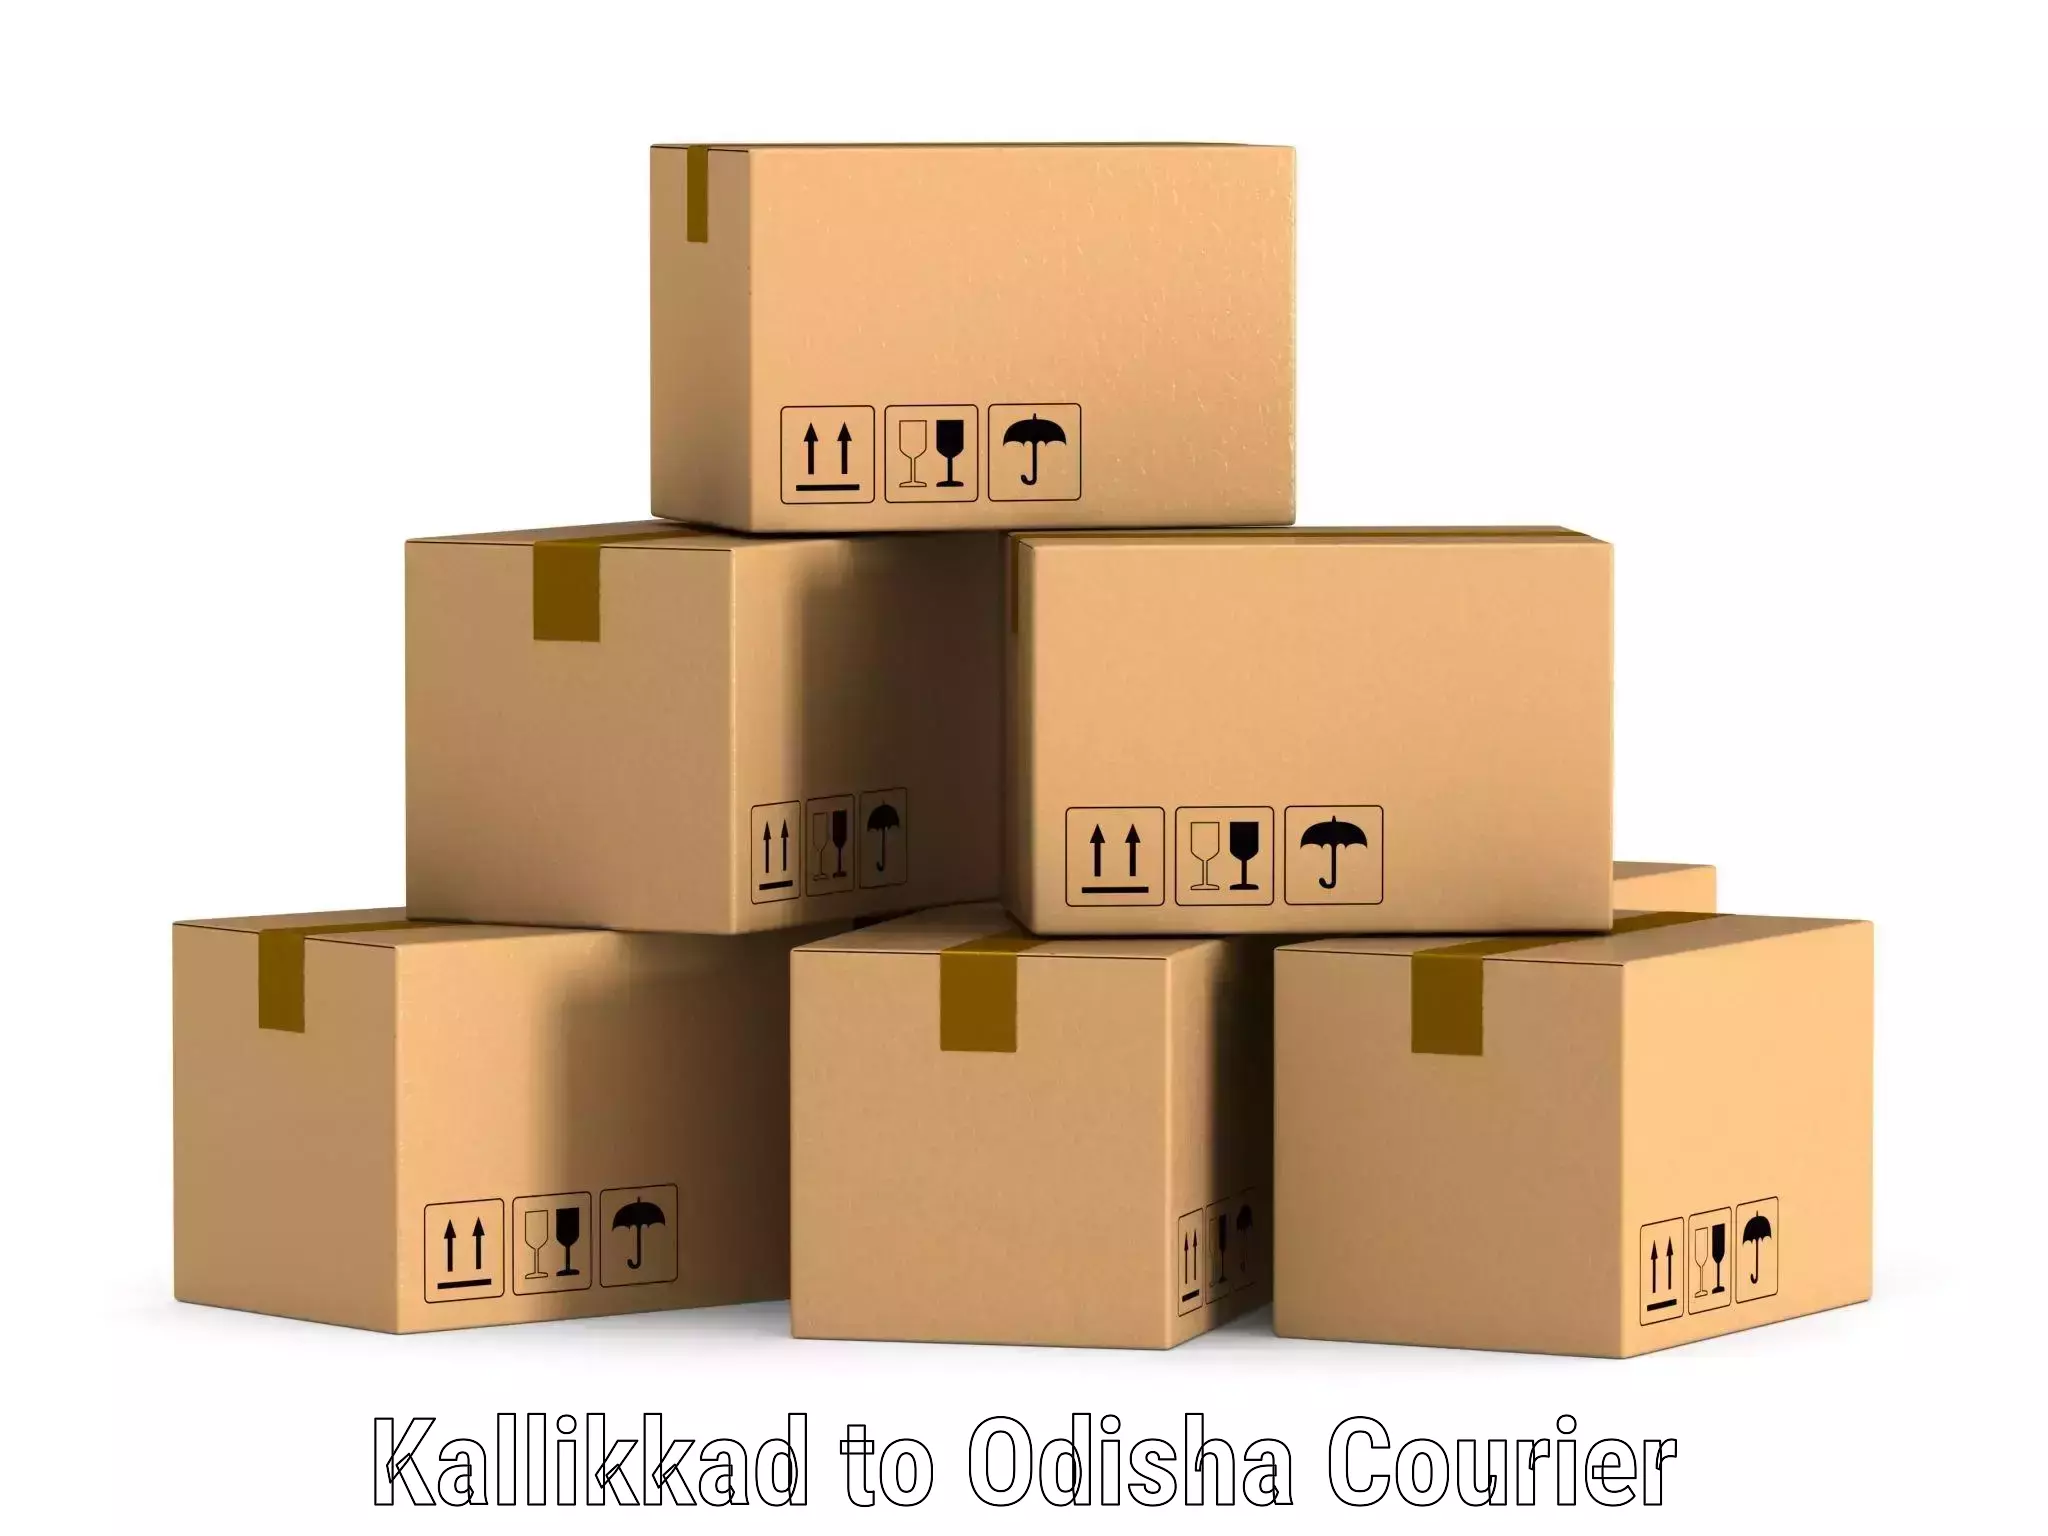 Logistics efficiency in Kallikkad to Sambalpur